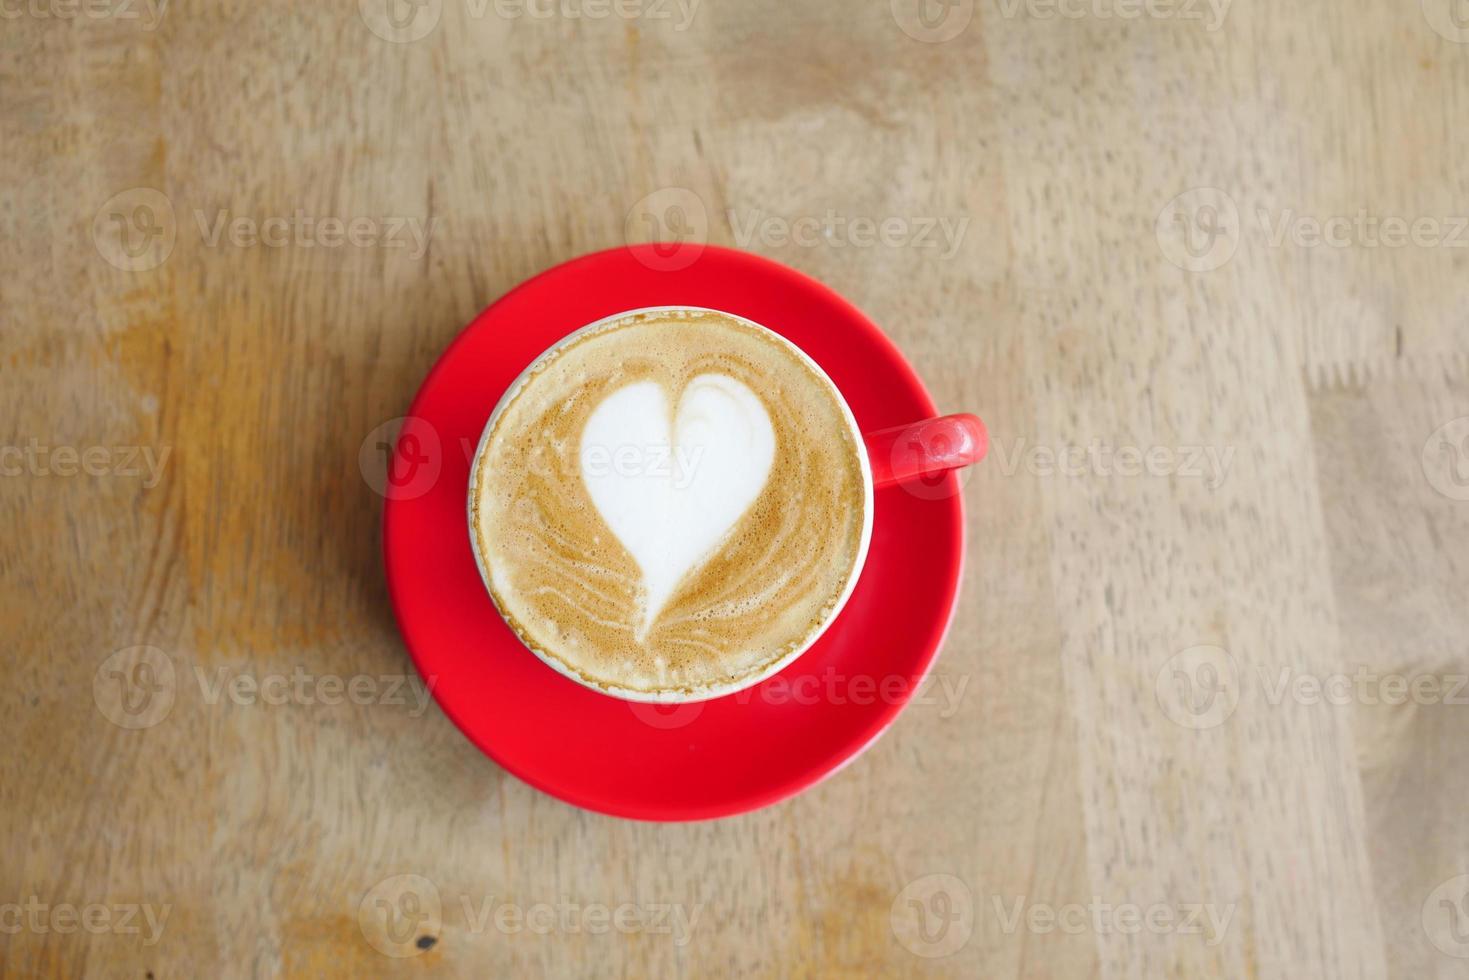 una tazza di caffè in ritardo con un design a forma di fiore in cima al bar foto